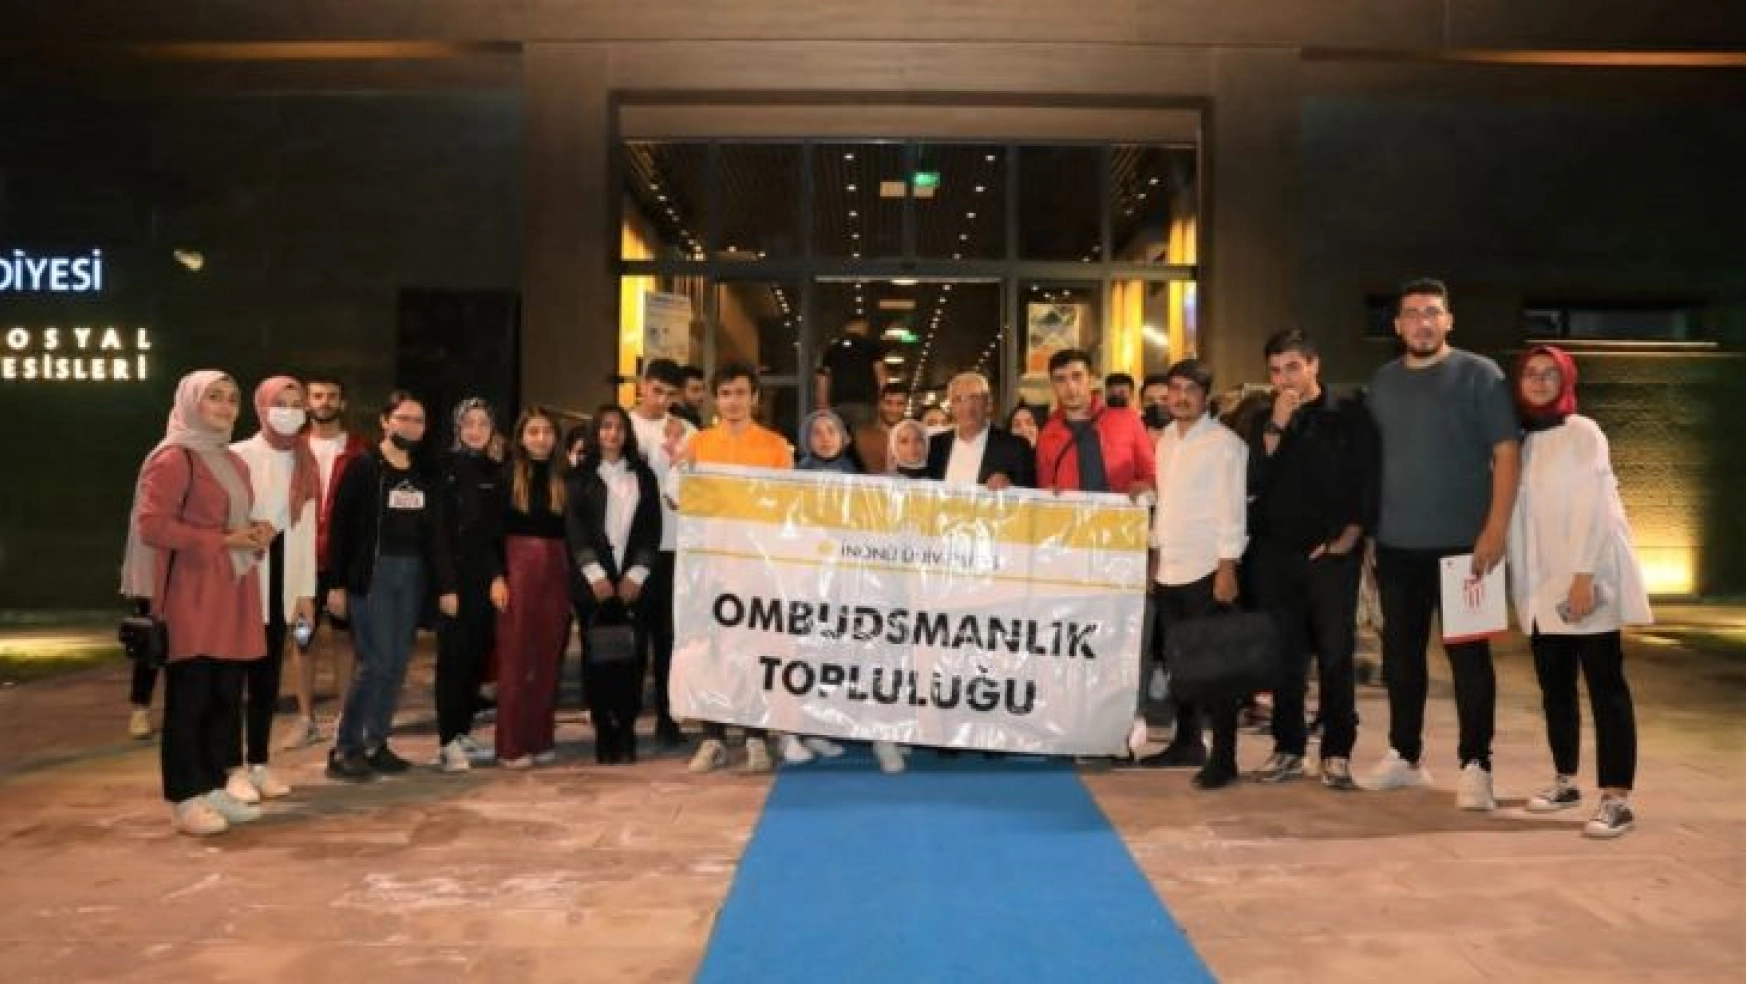 Ombudsmanlık topluluğu üyeleri, medeniyetin kalbi Battalgazi'yi gezdi